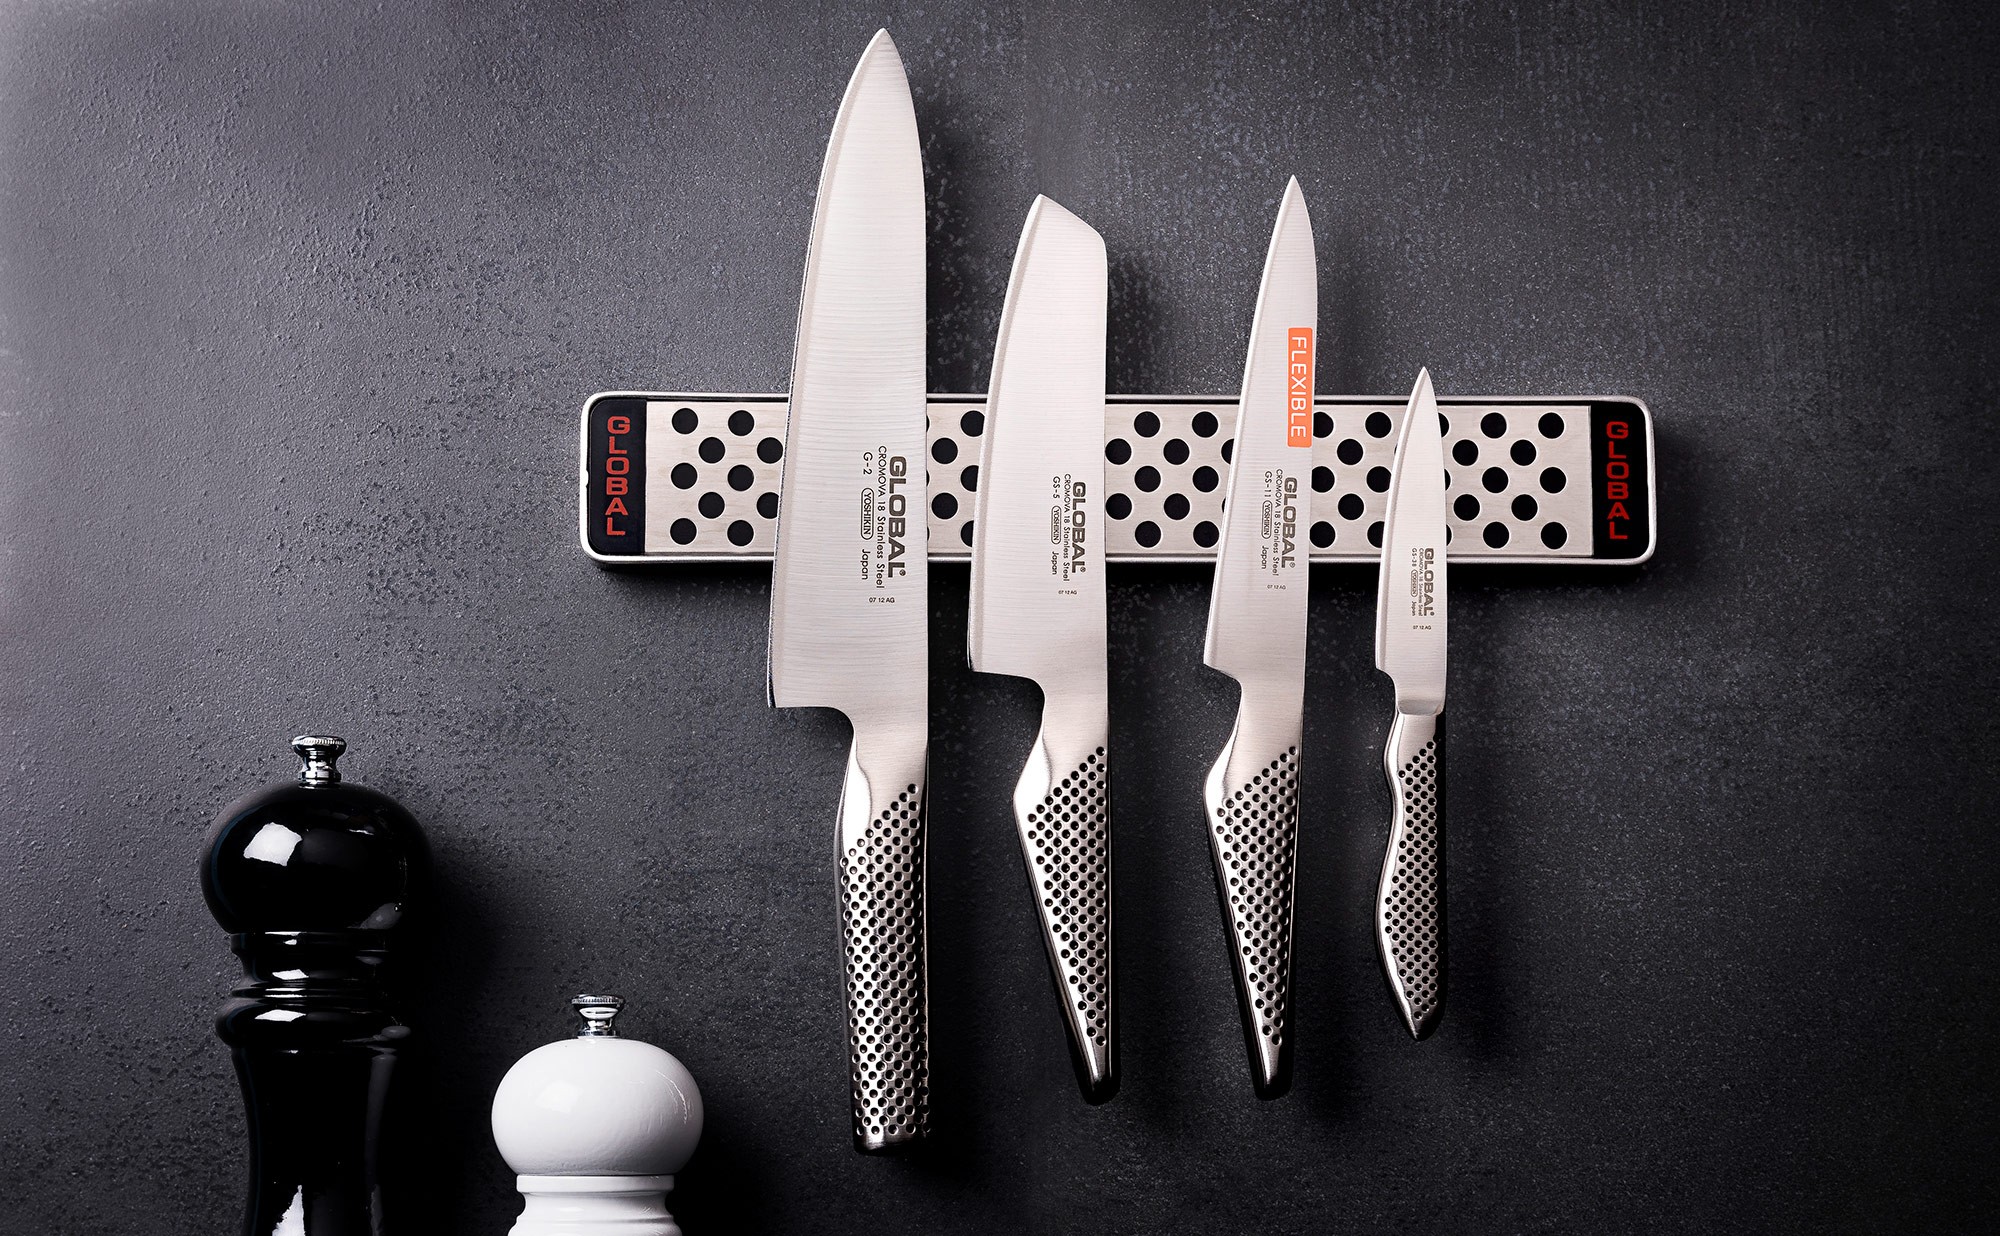 Set de 4 couteaux + barre aimantée Global - Colichef